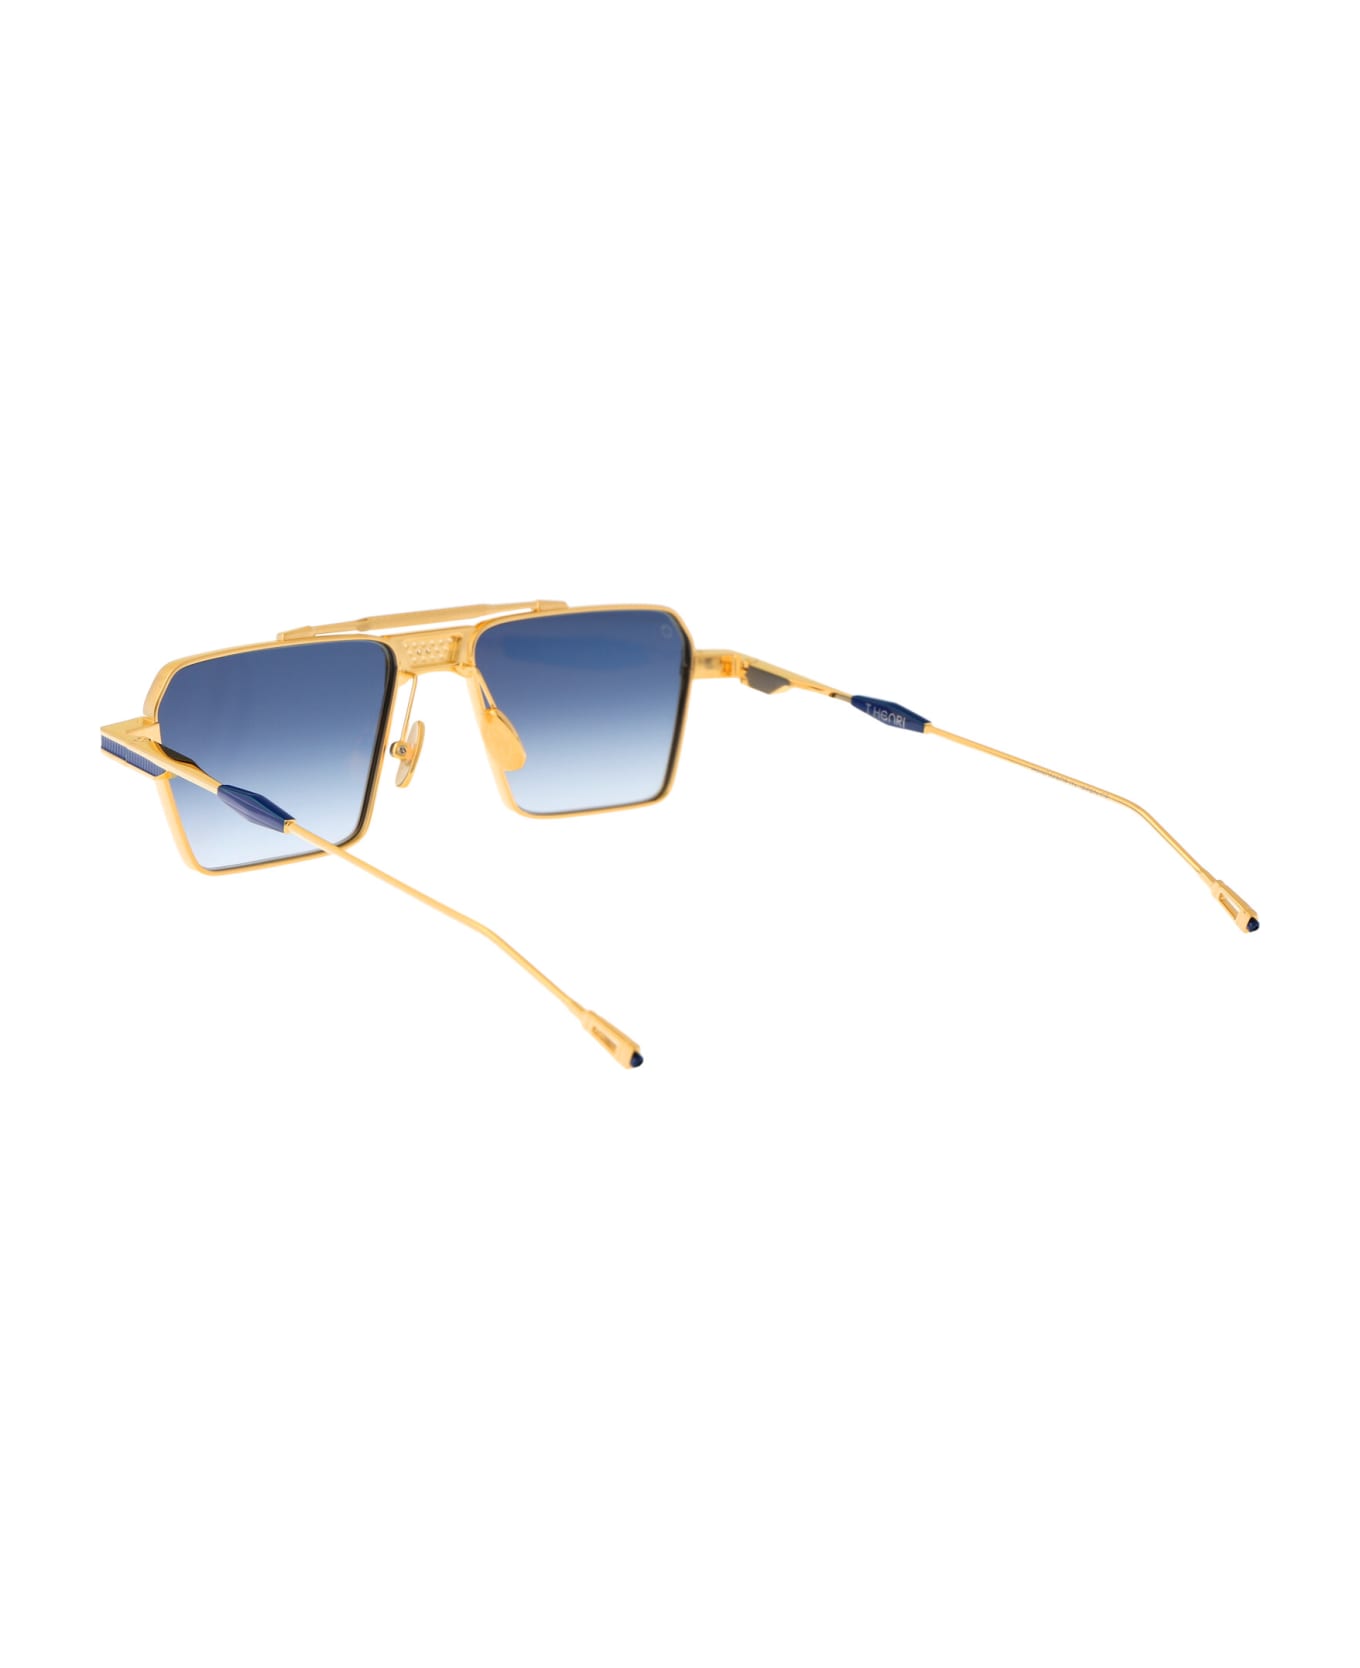 T Henri Scud Sunglasses - L'OR BLEU サングラス